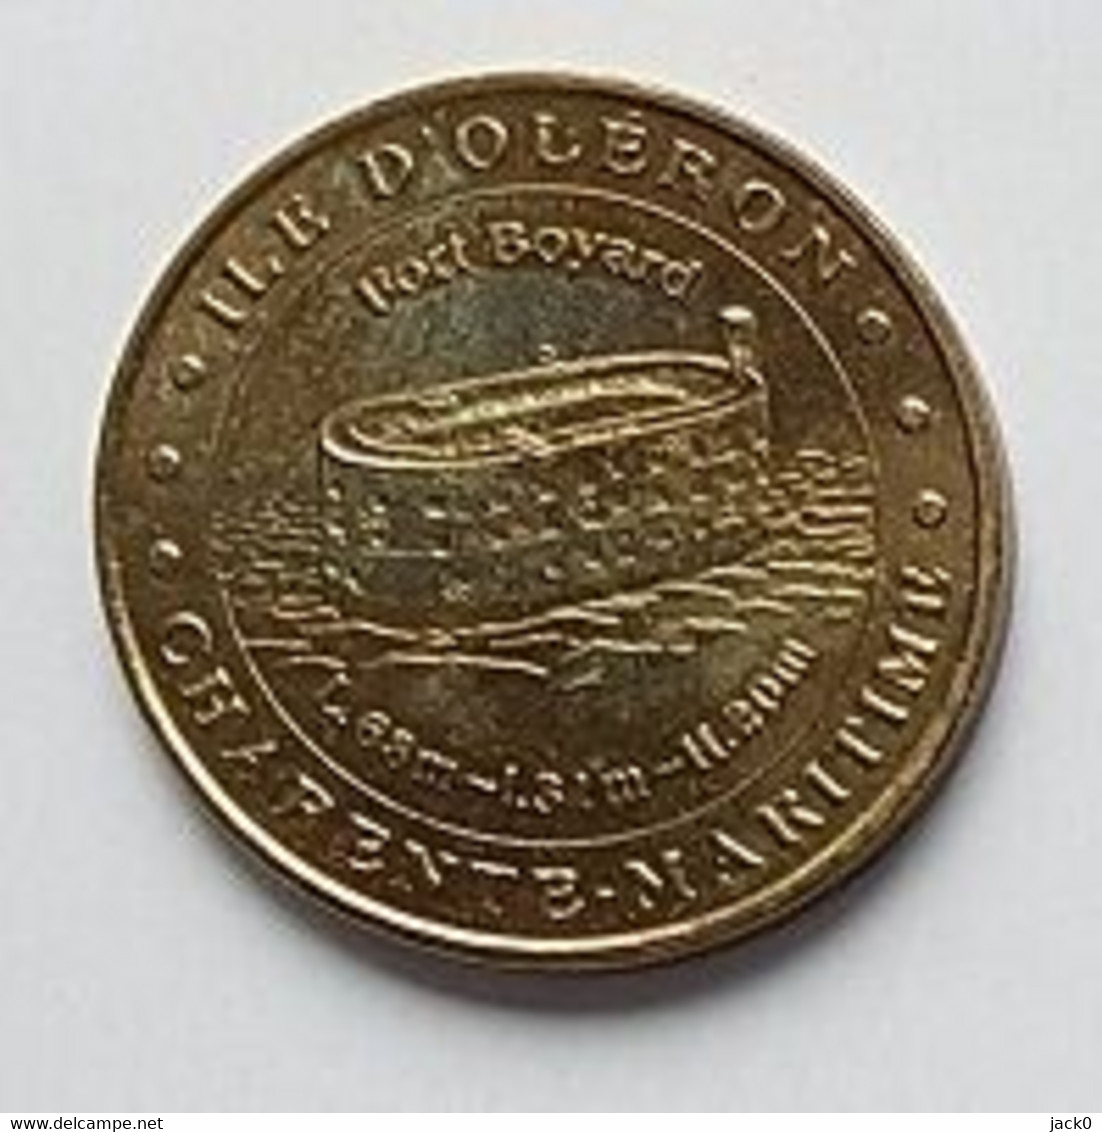 Médaille Touristique, Monnaie De Paris  2006, ILE  D' OLERON? SAINT - DENIS  D' OLERON, FORT  BOYARD  ( 17 ) - 2006